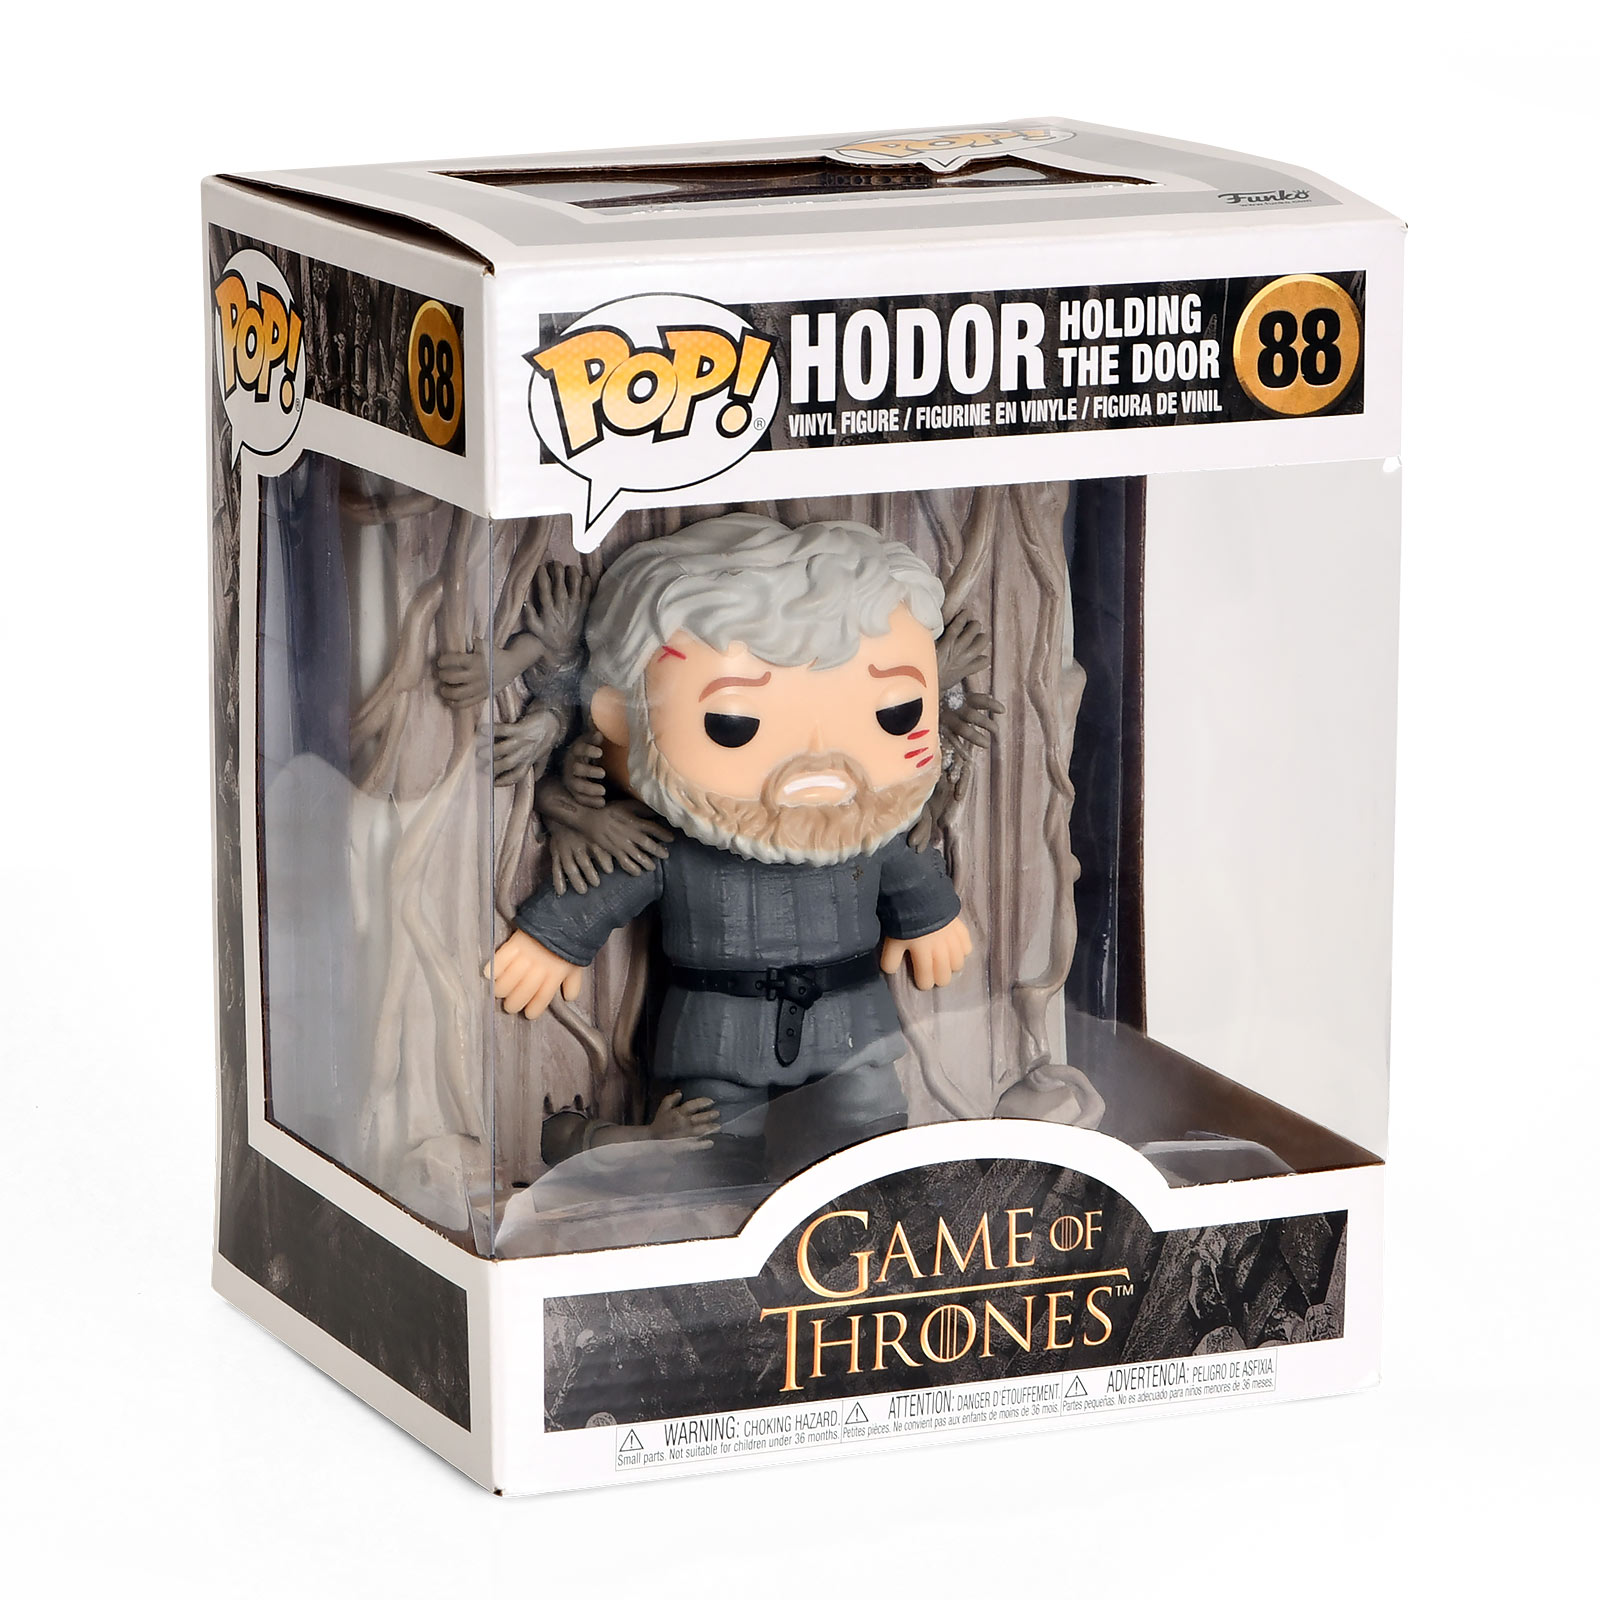 Game of Thrones - Hodor Hold the Door Funko Pop Figure